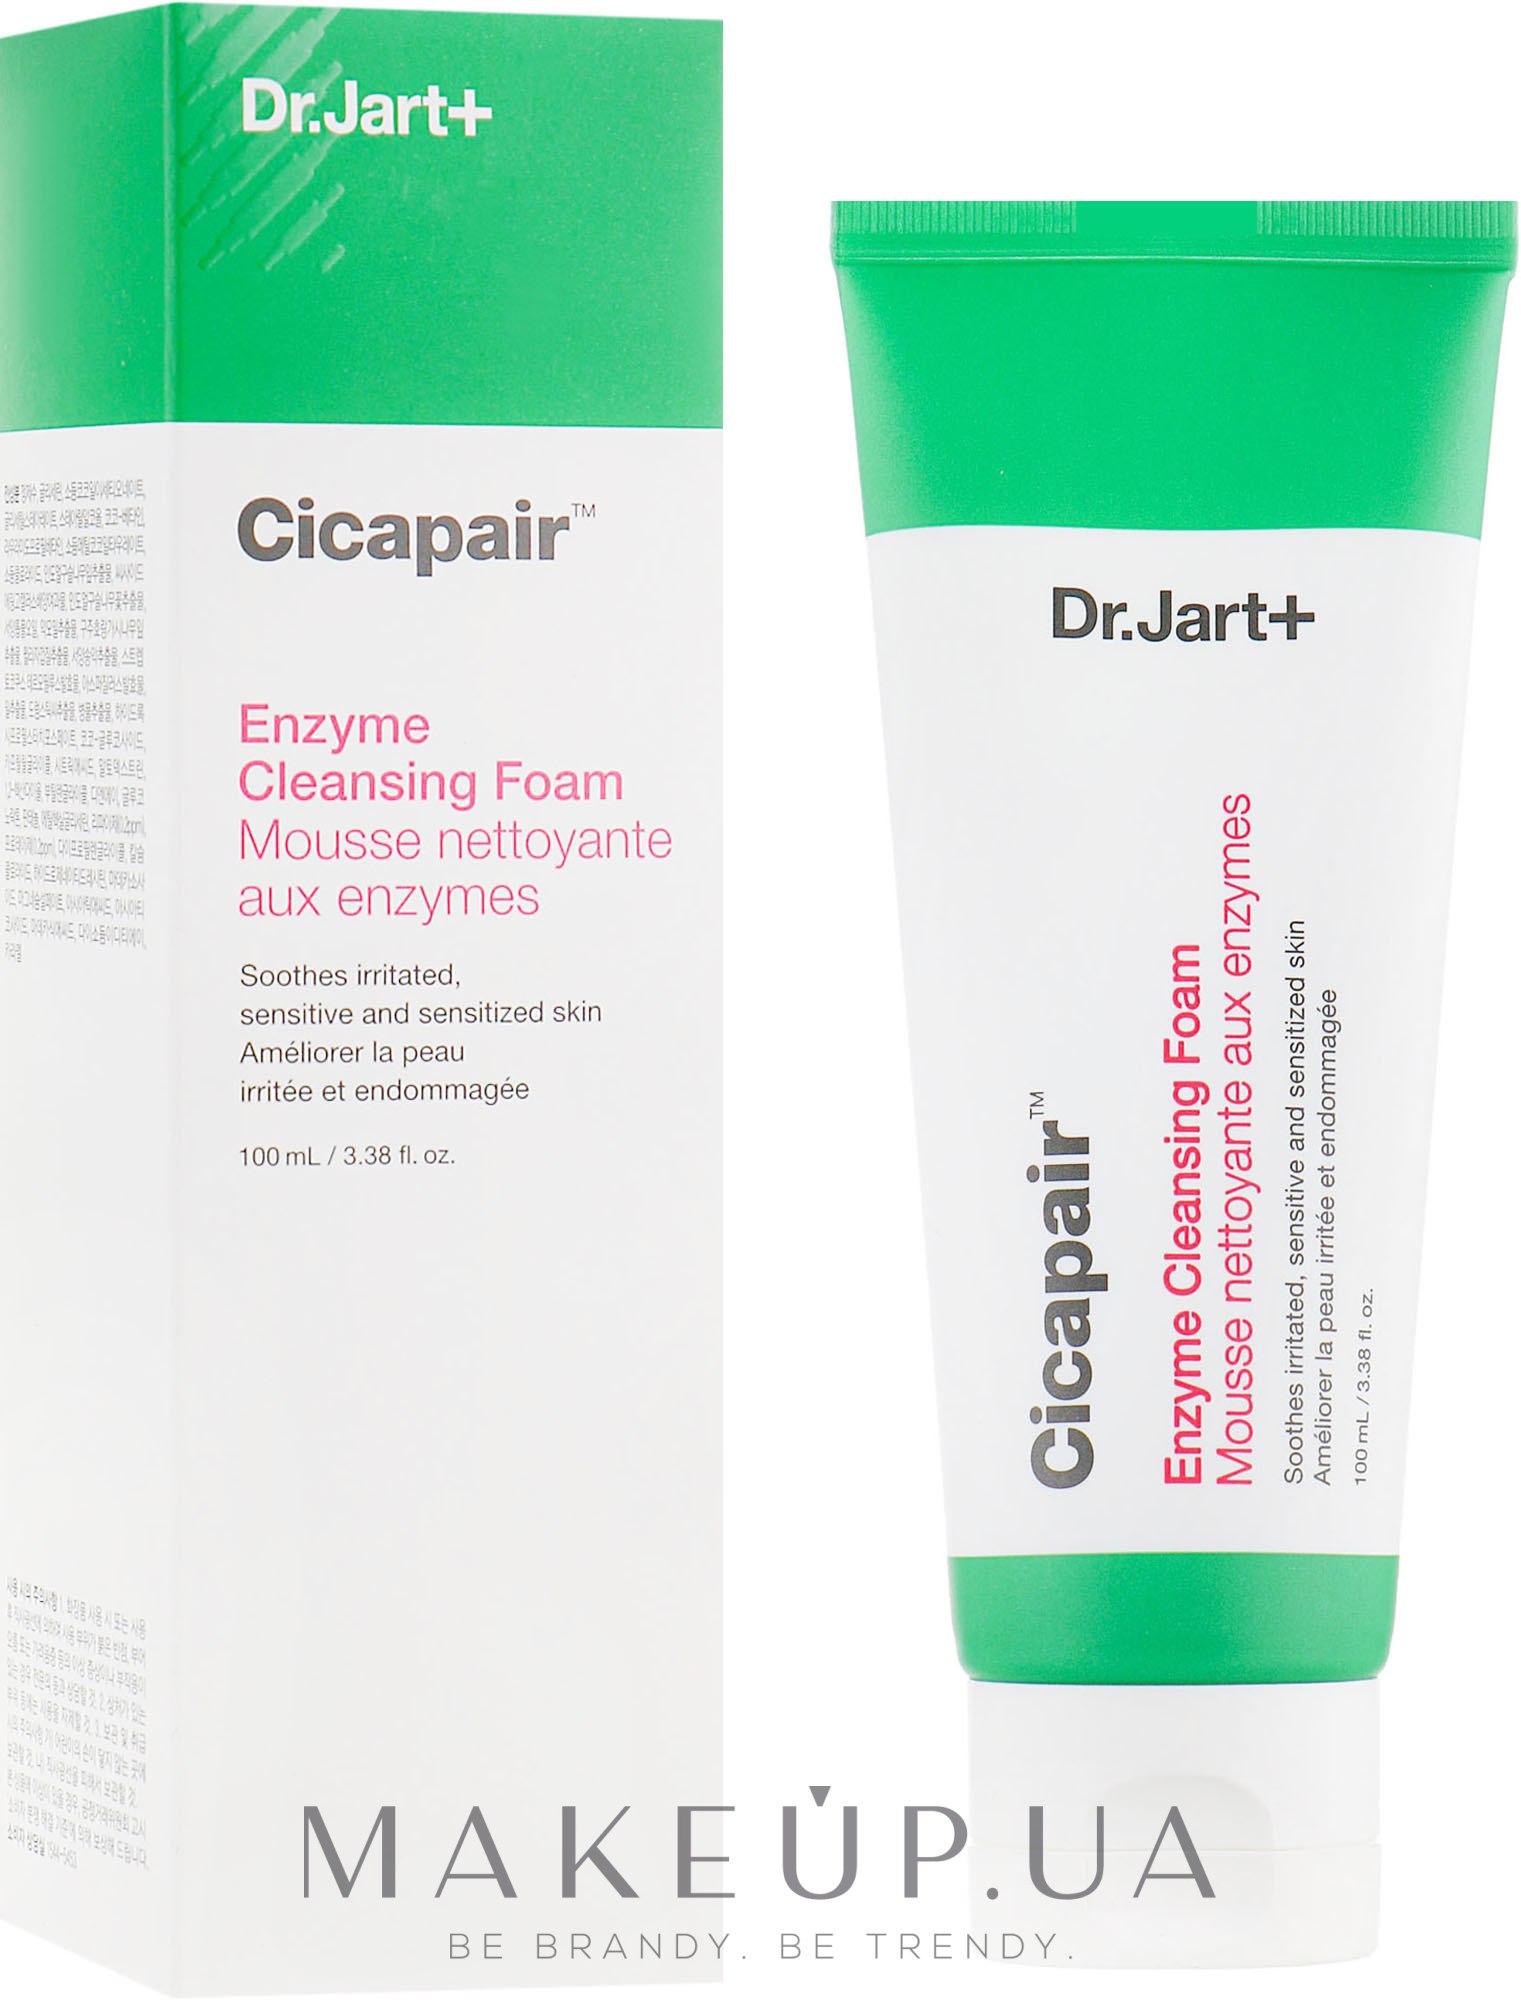 Dr. Jart+ Cicapair Enzyme Cleansing Foam 3.38 Oz